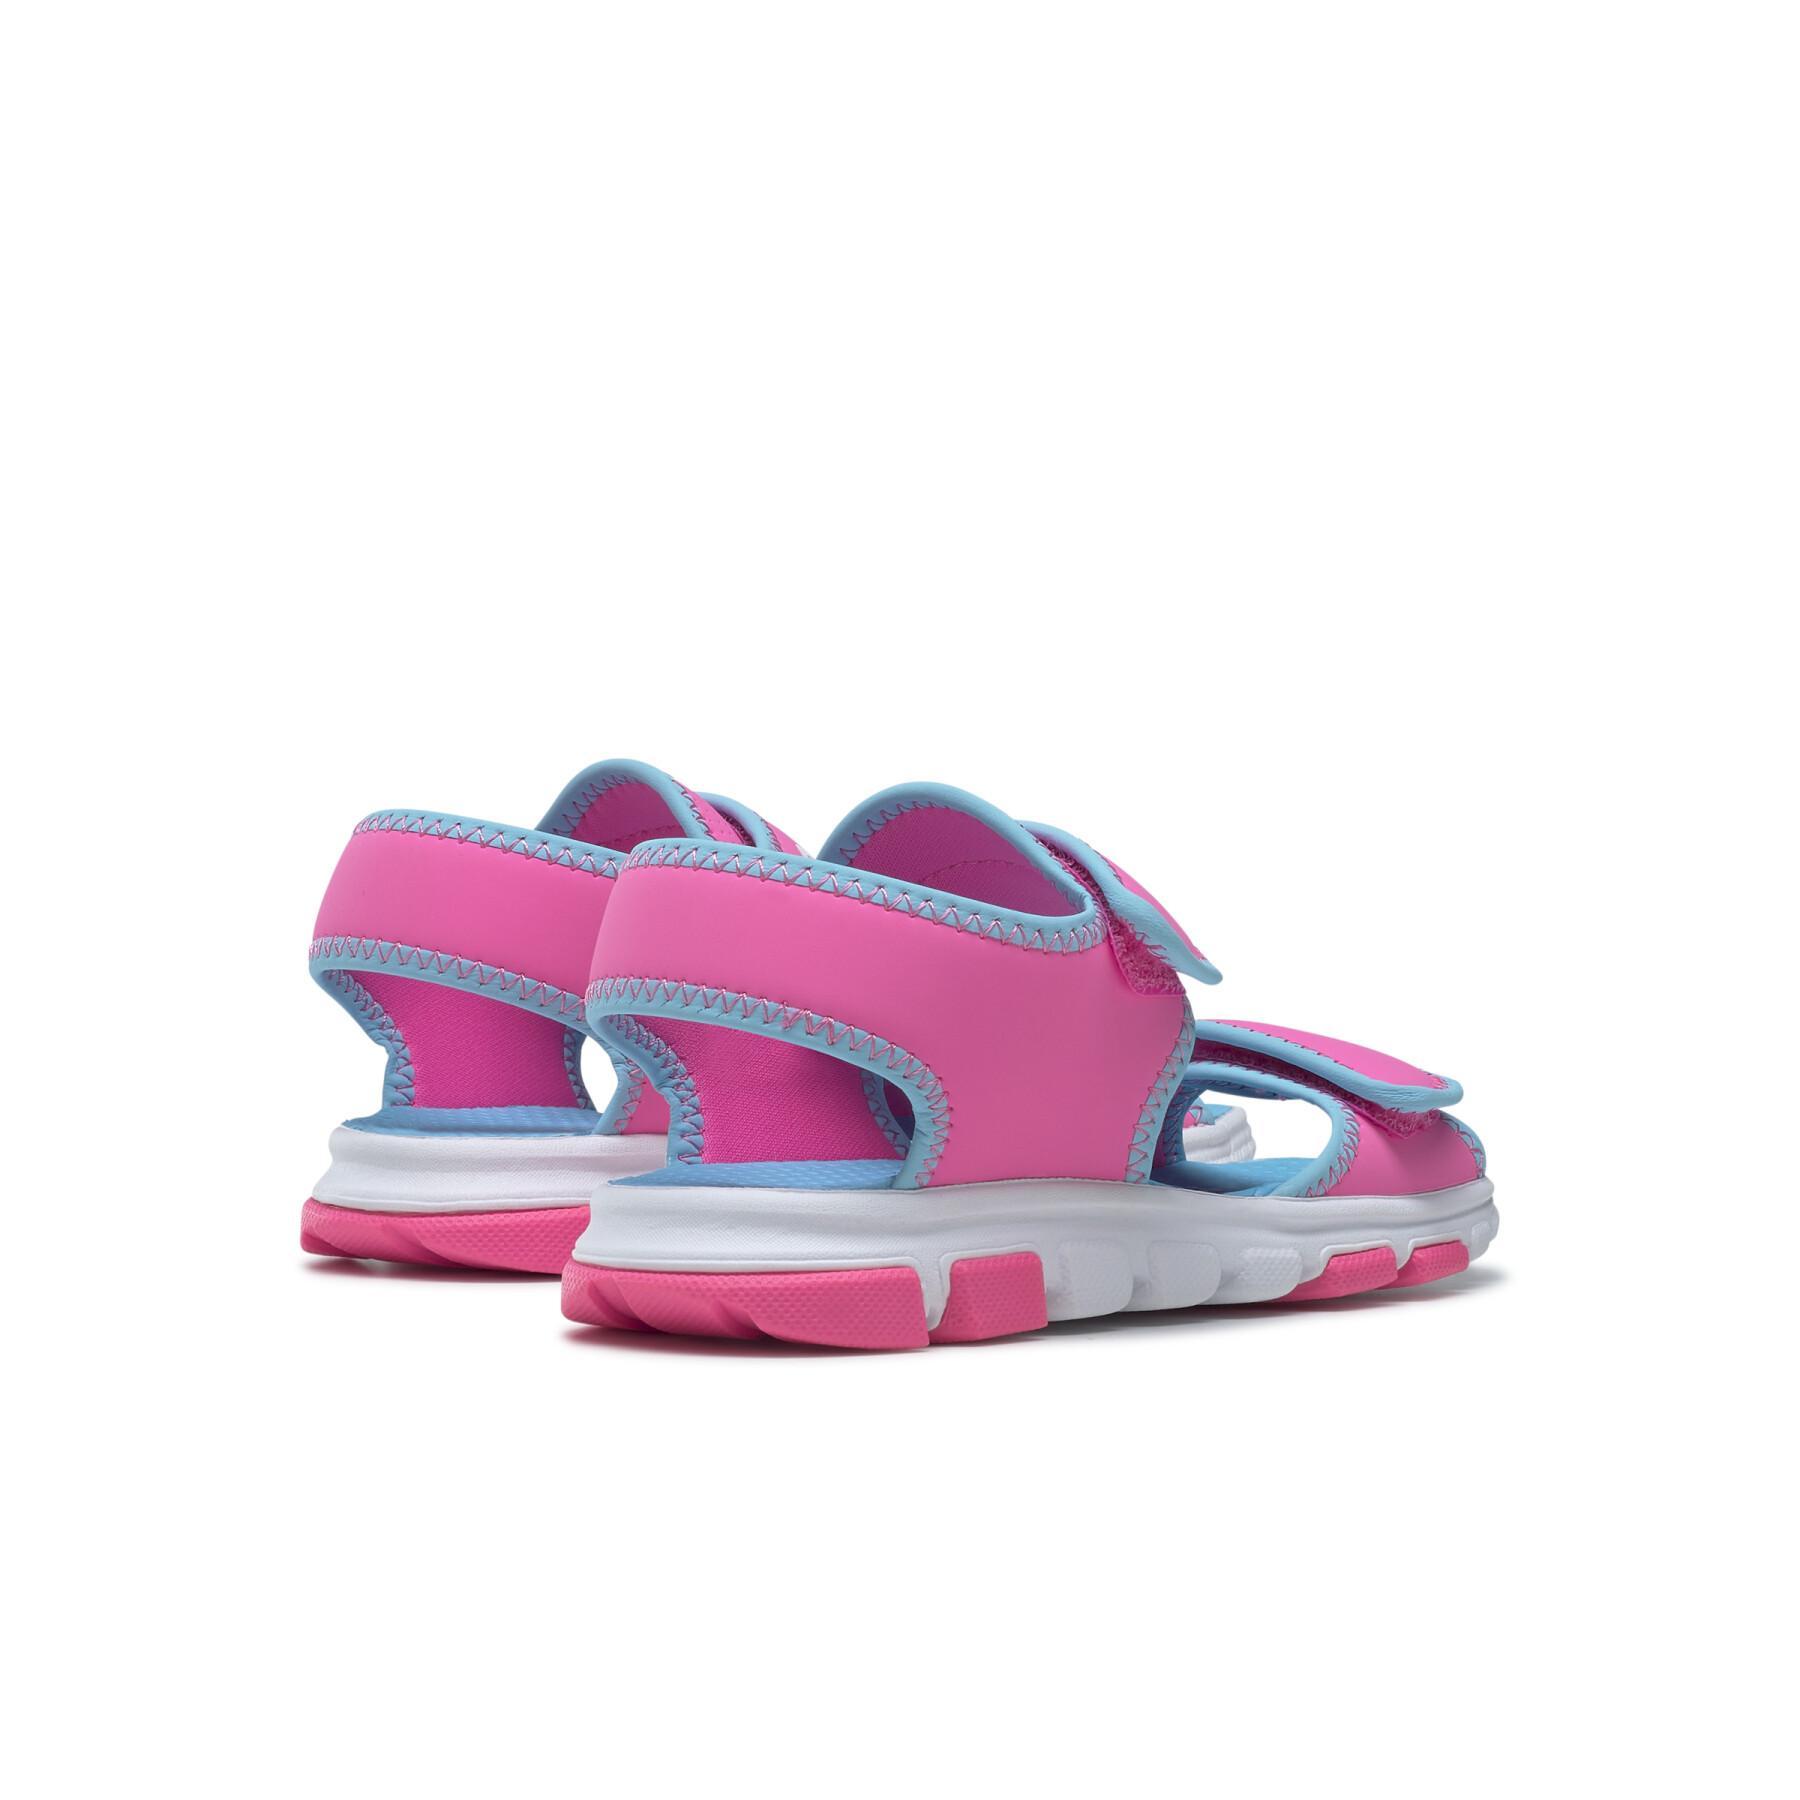 Sandalias de niña Reebok Wave Glider III